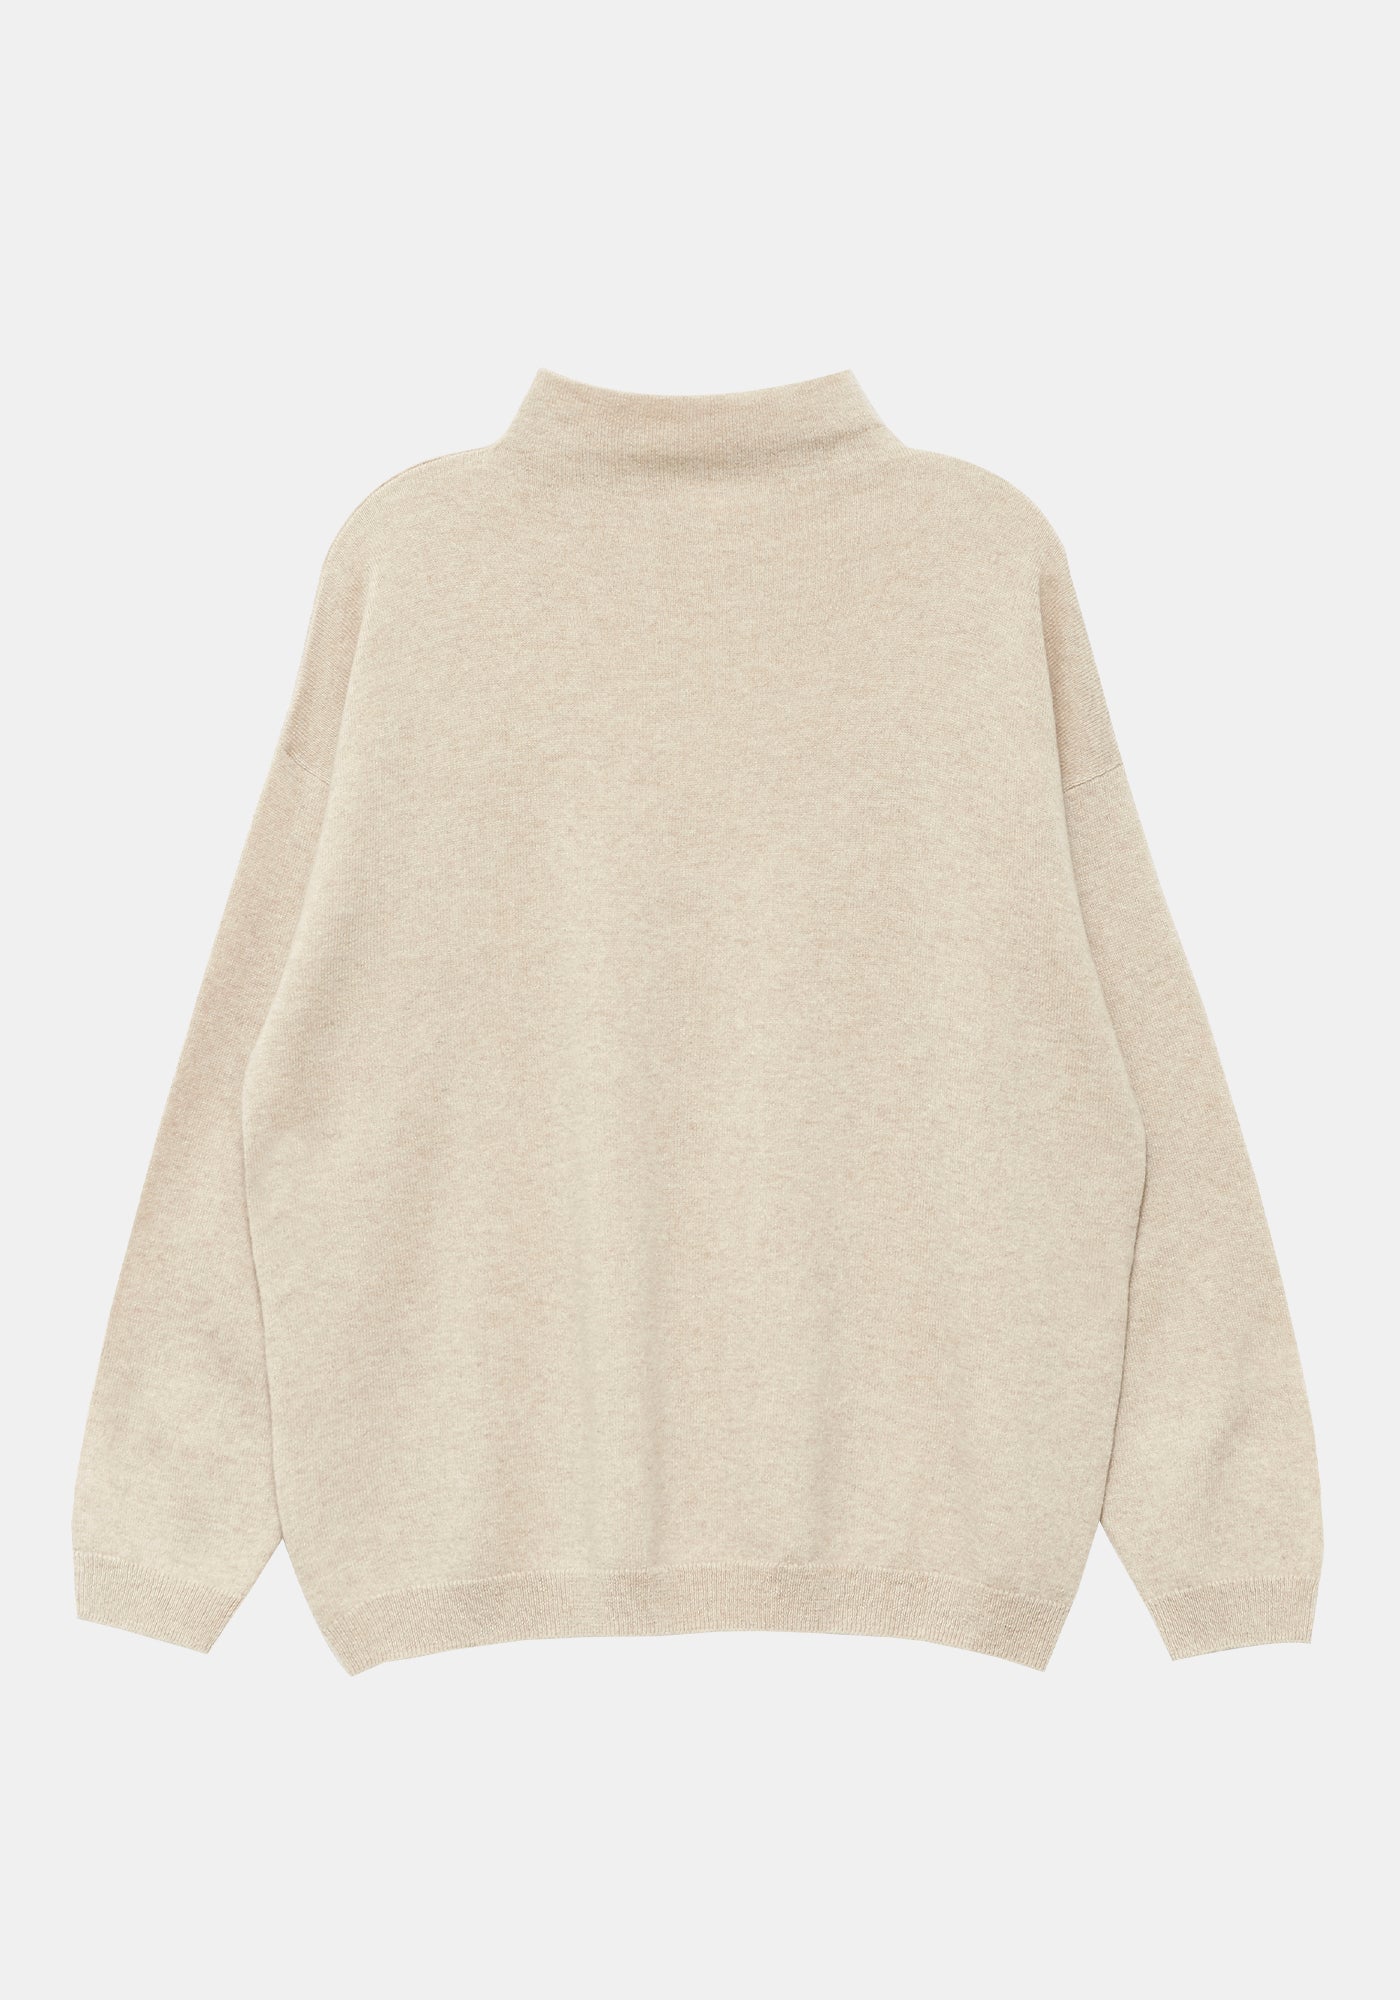 Callen Sweater